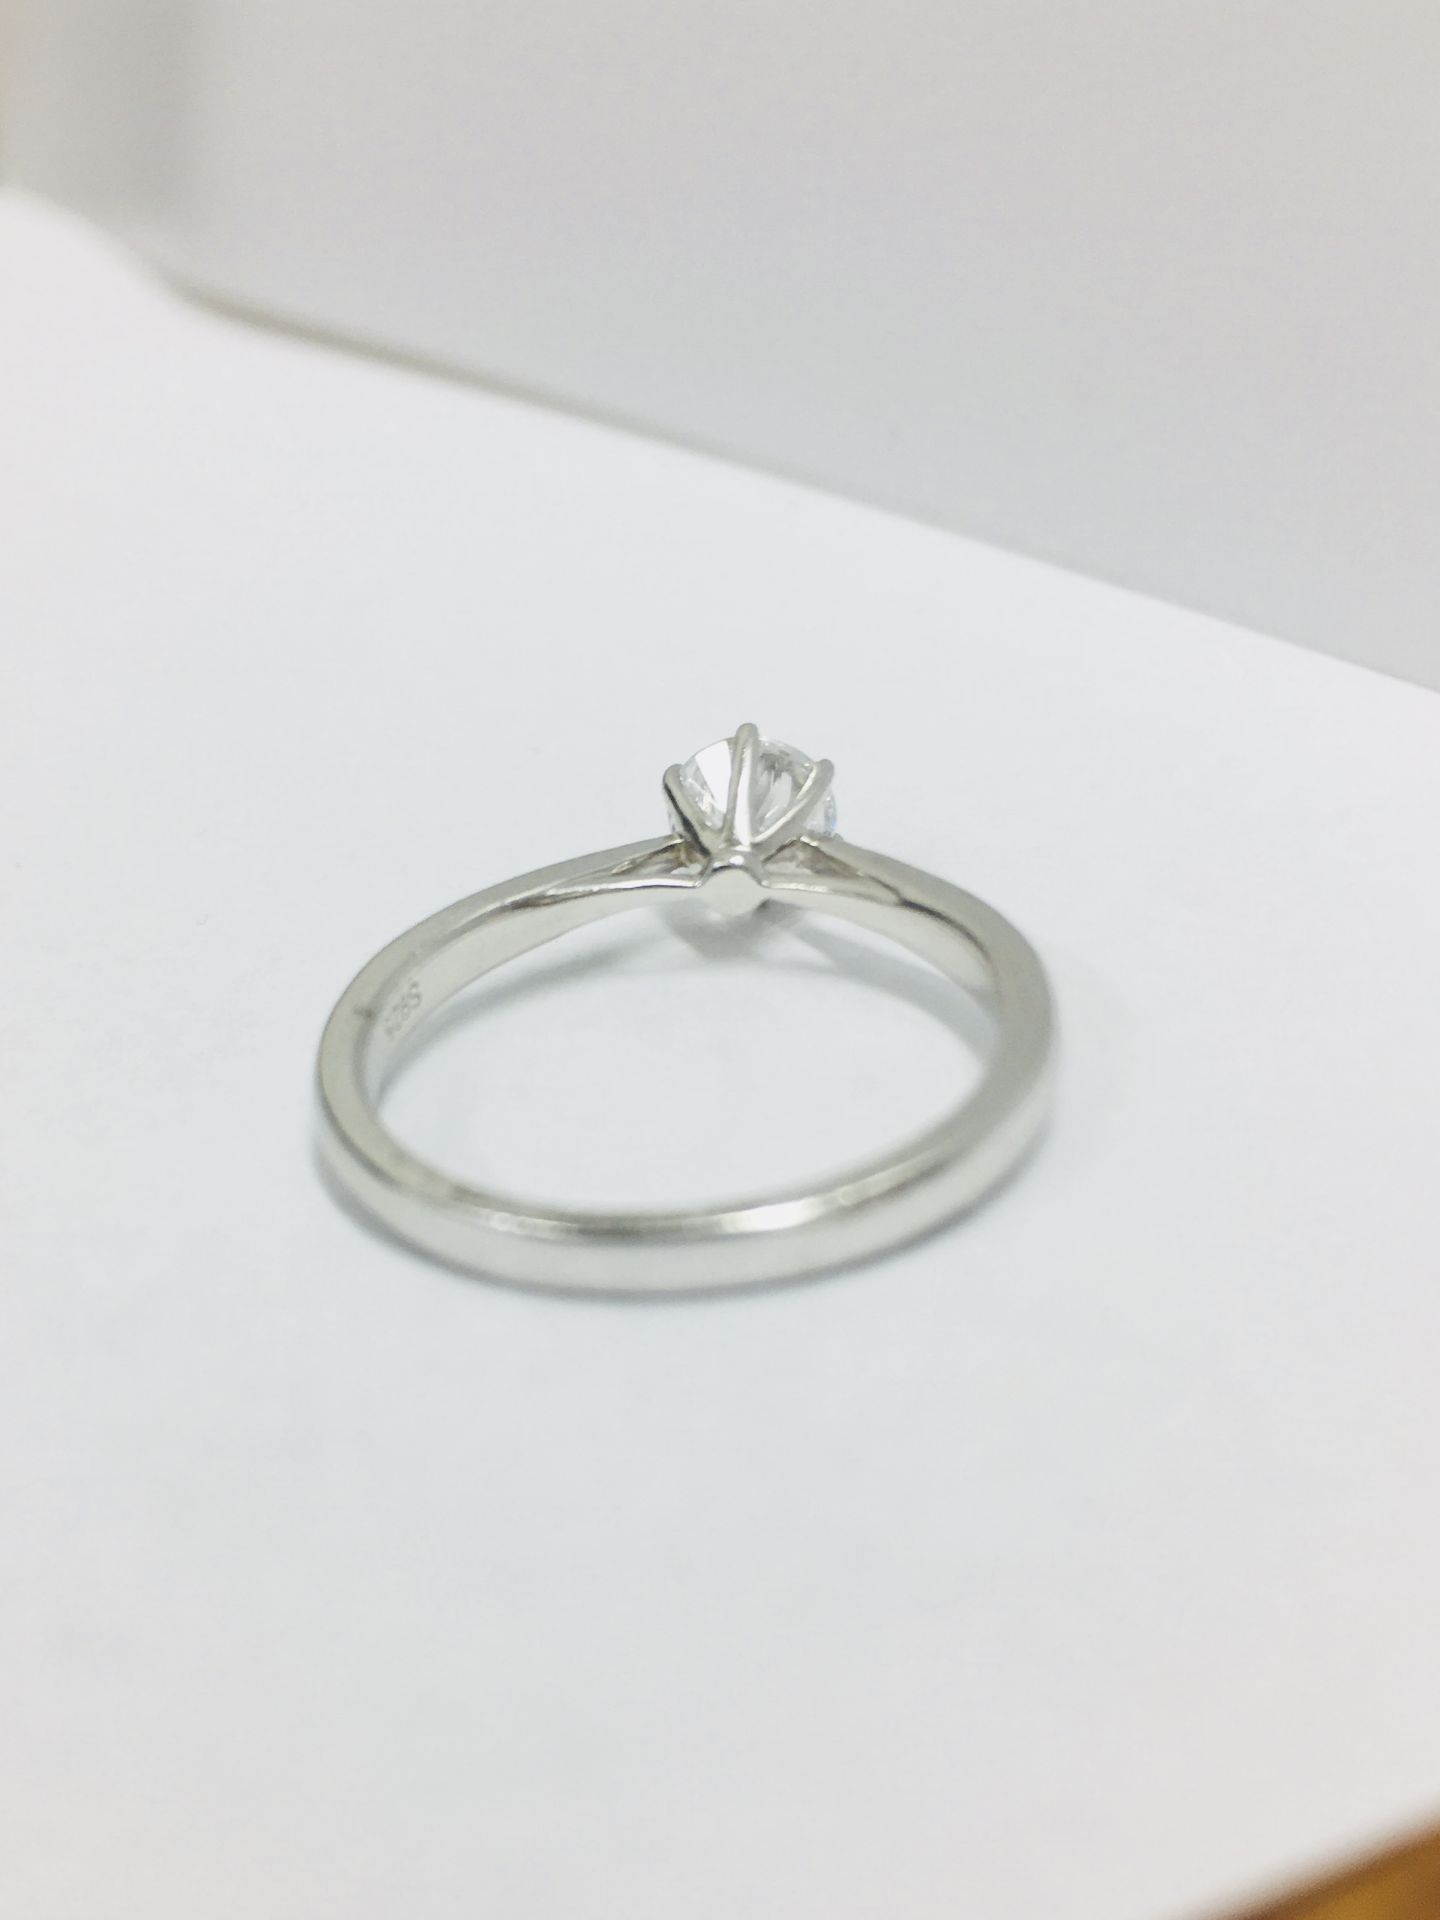 Platinum diamond solitaire ring,050ct brilliant cut diamond D colour vs clarity,platinum 3.83gms - Image 4 of 5